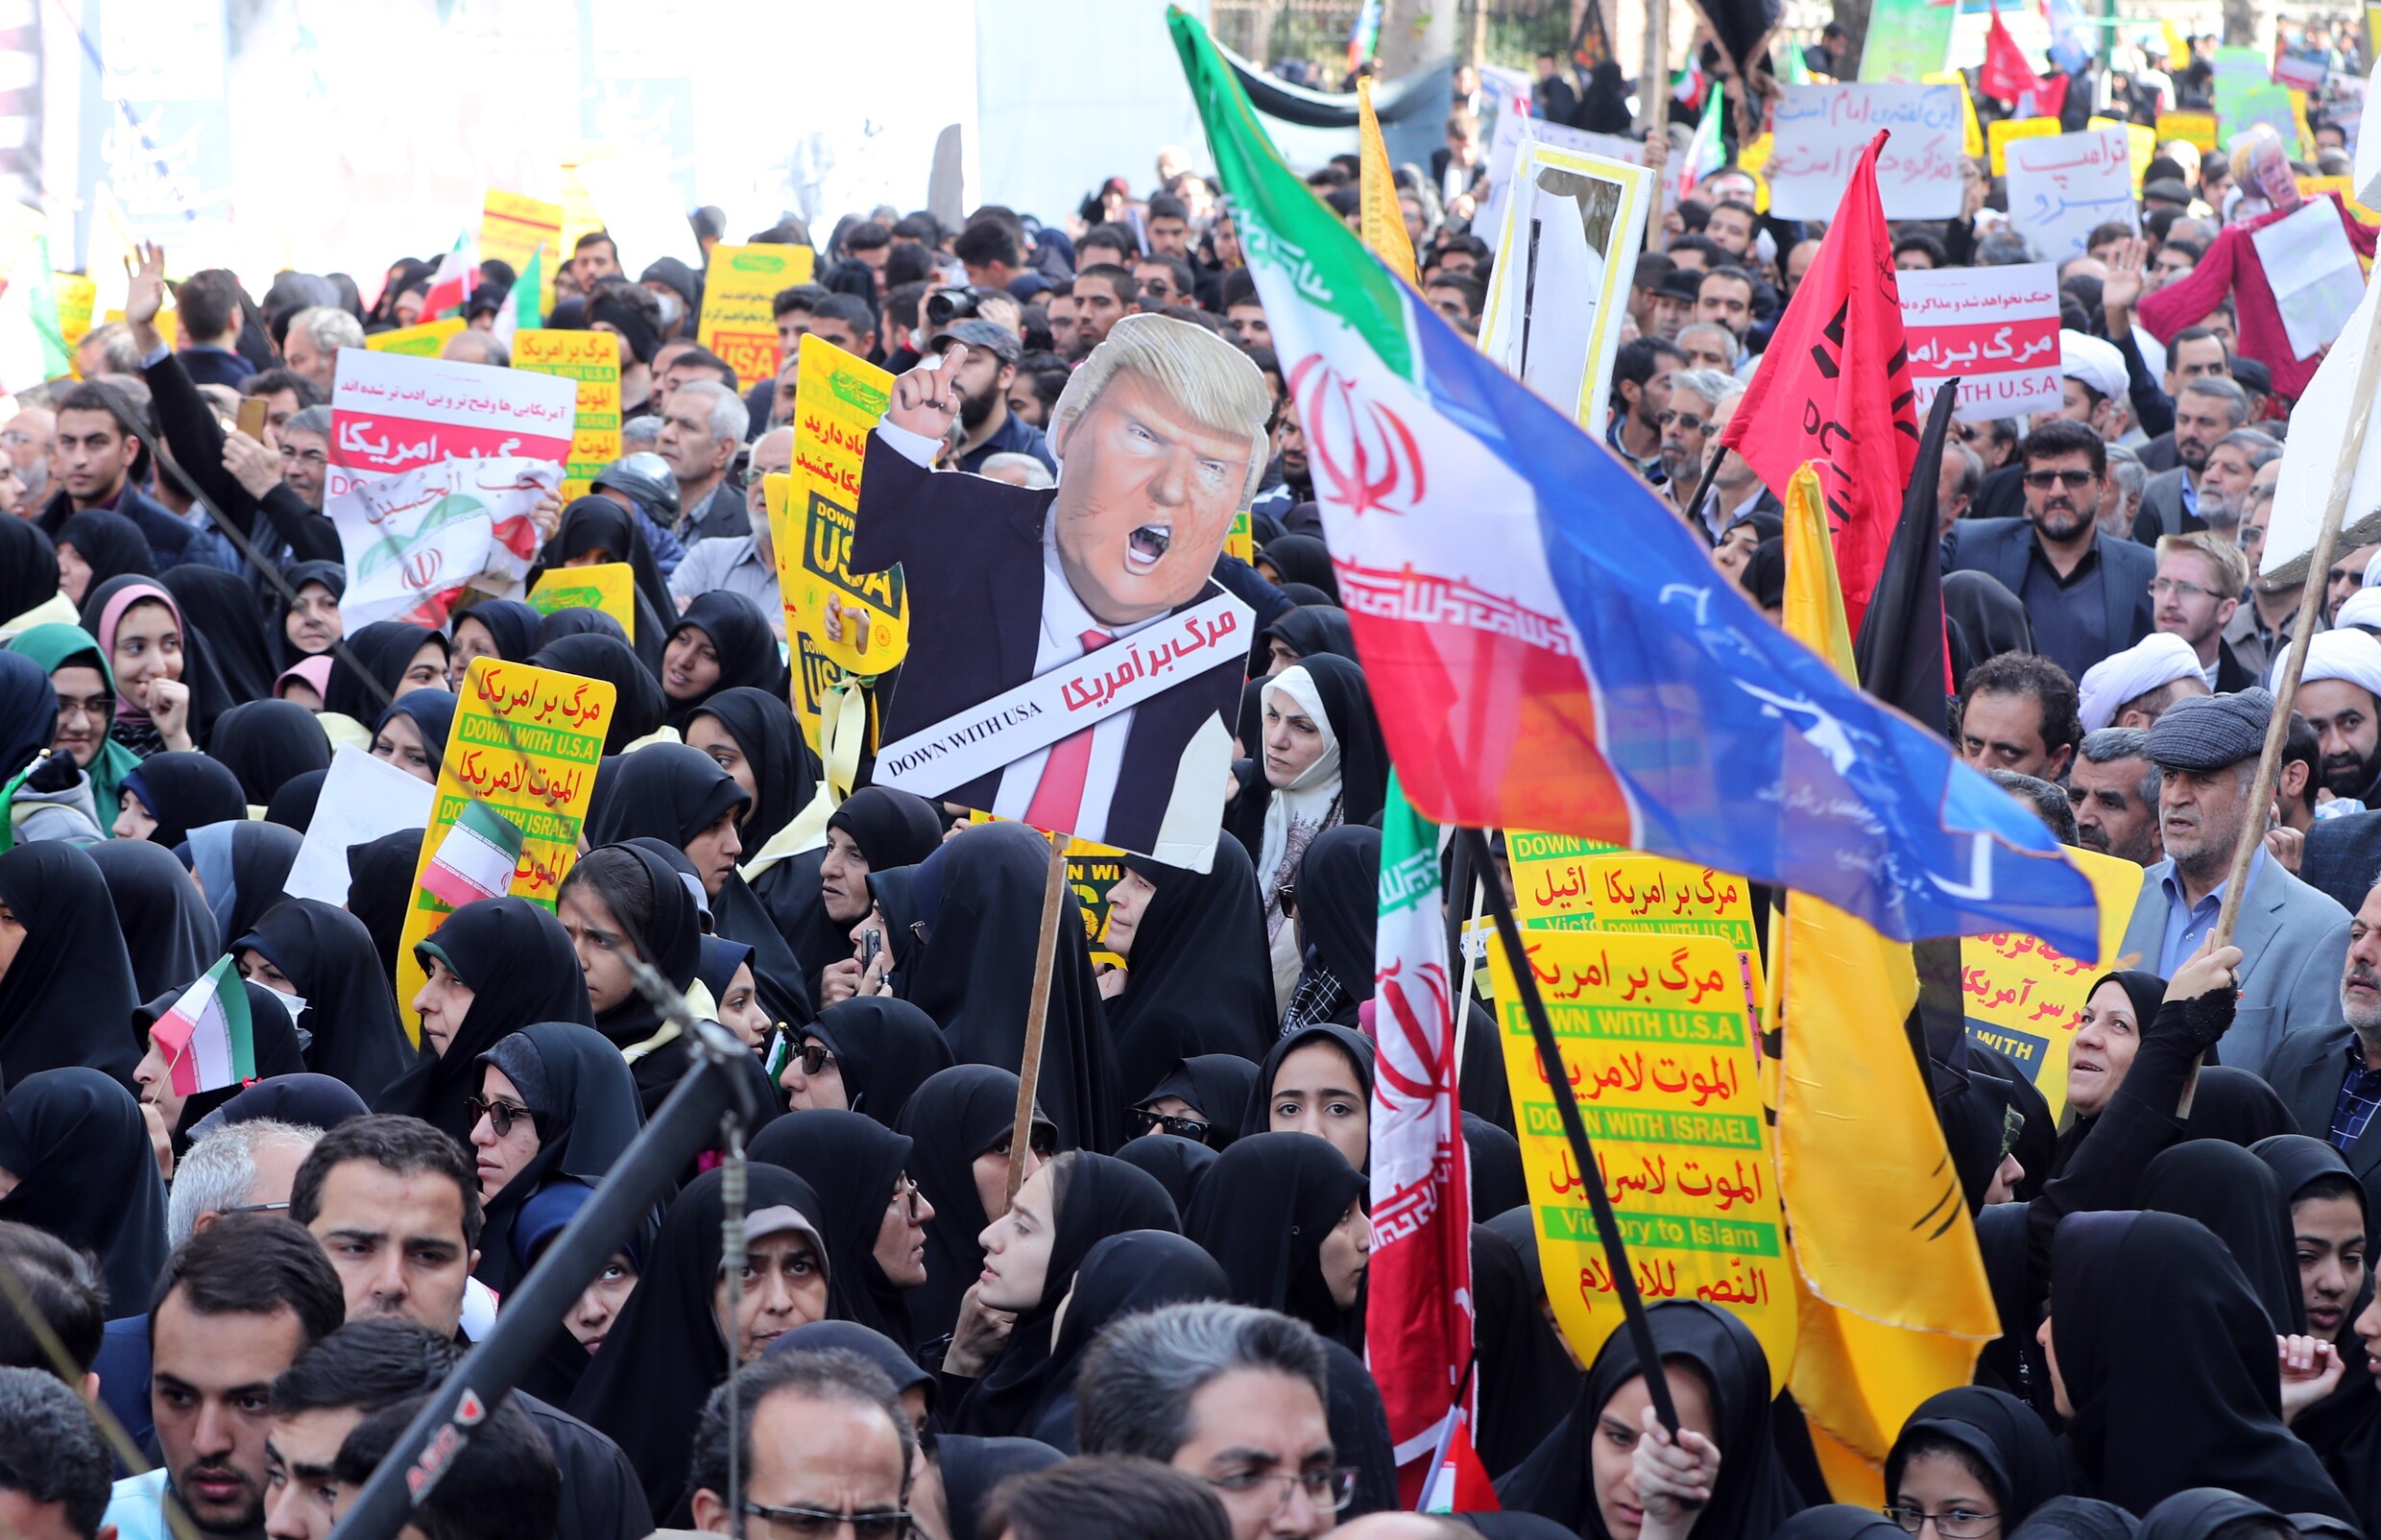 Tienduizenden Iraniërs protesteren tegen economische sancties VS